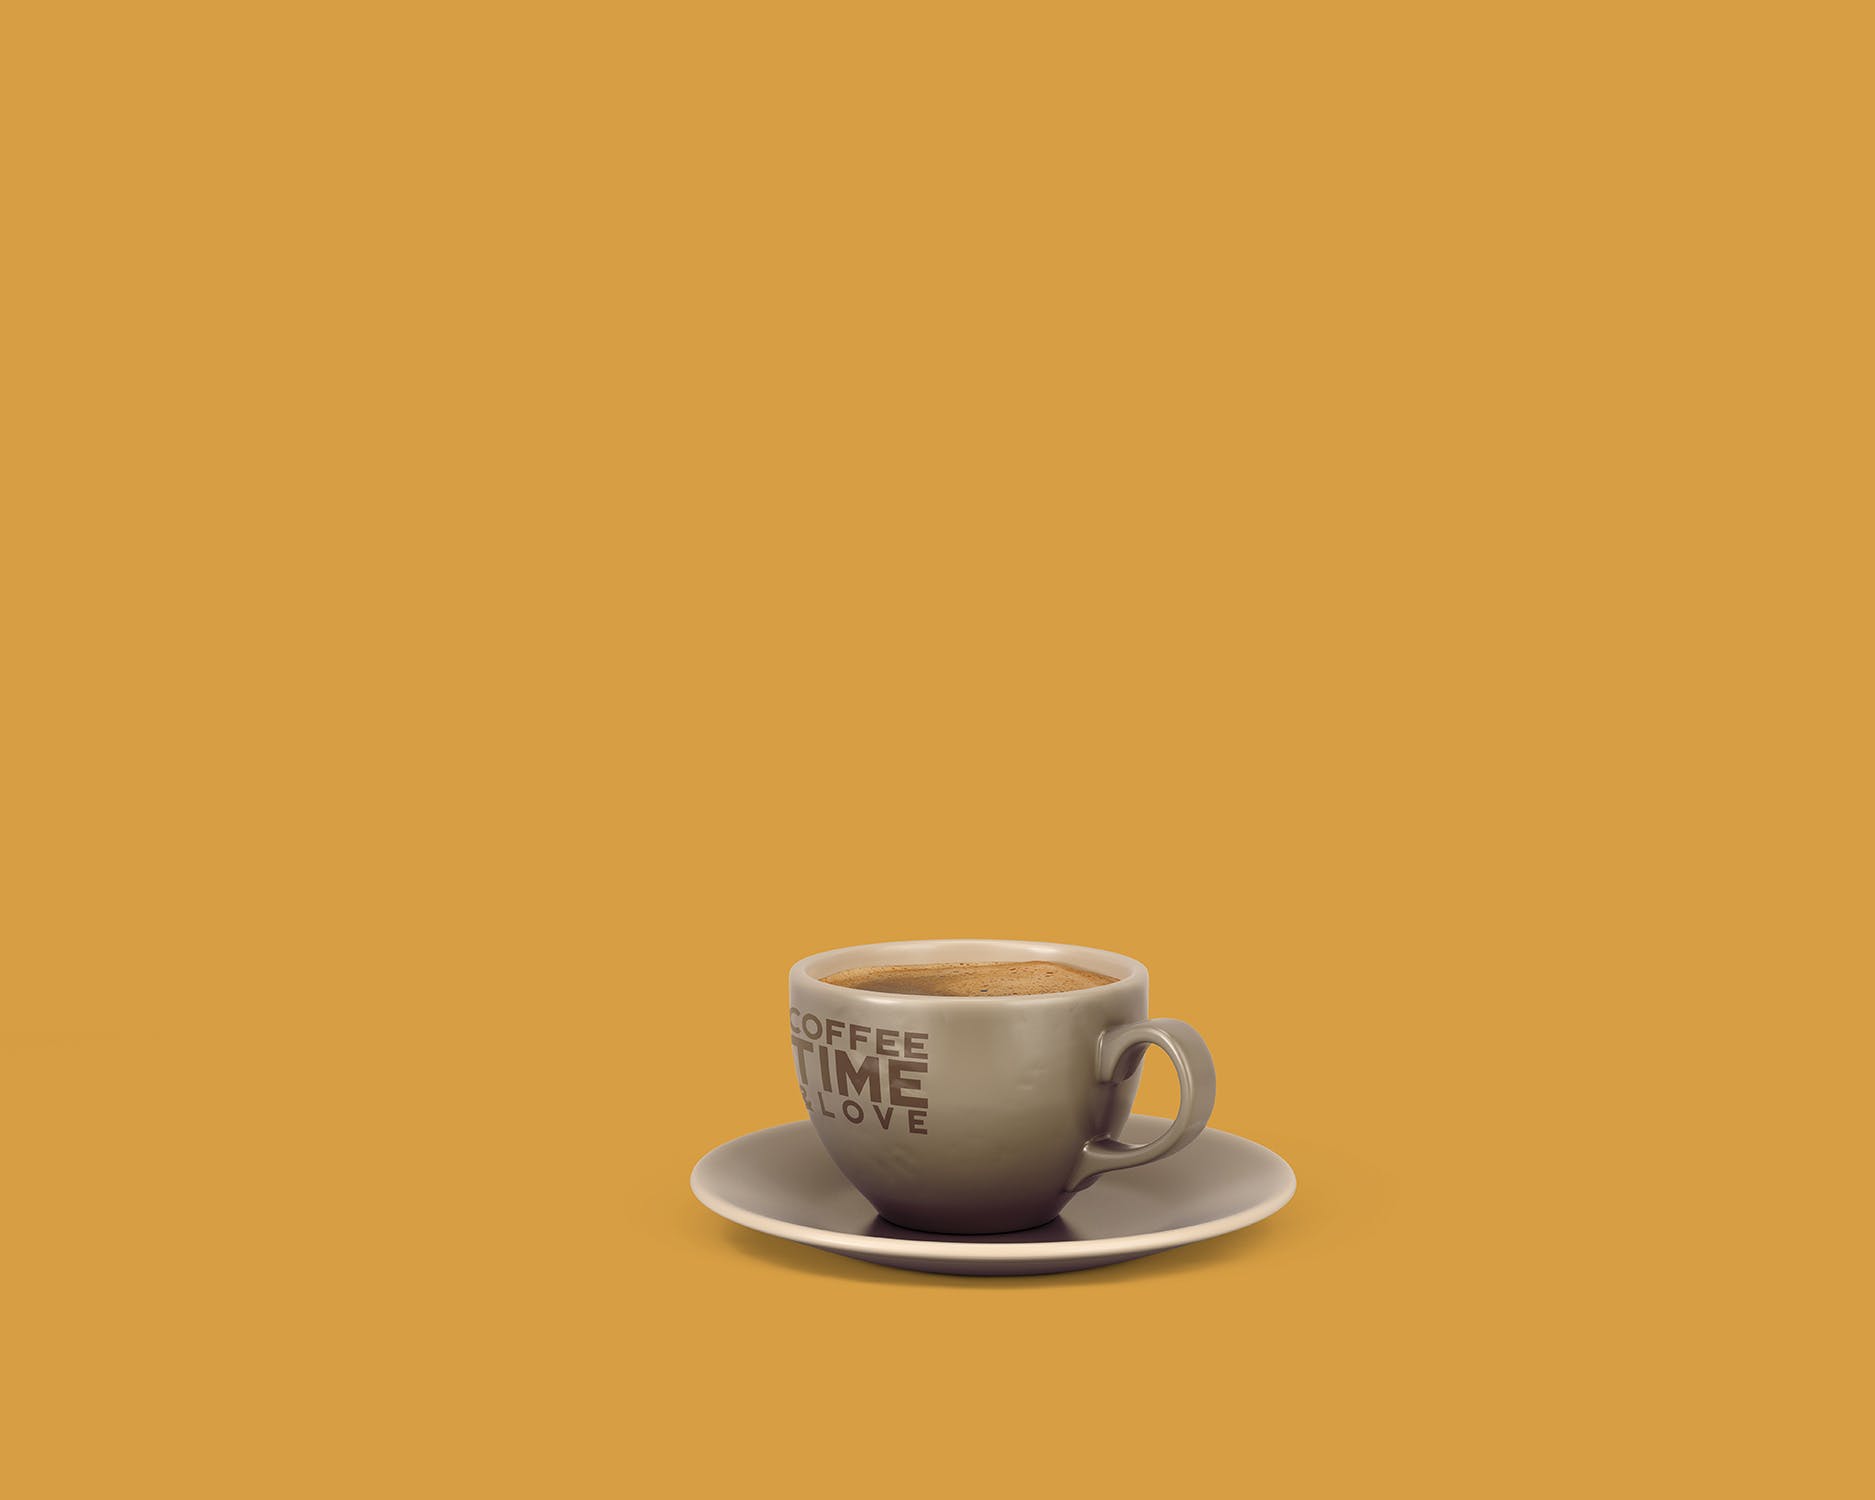 8个咖啡马克杯设计图蚂蚁素材精选 8 Coffee Cup Mockups插图(8)